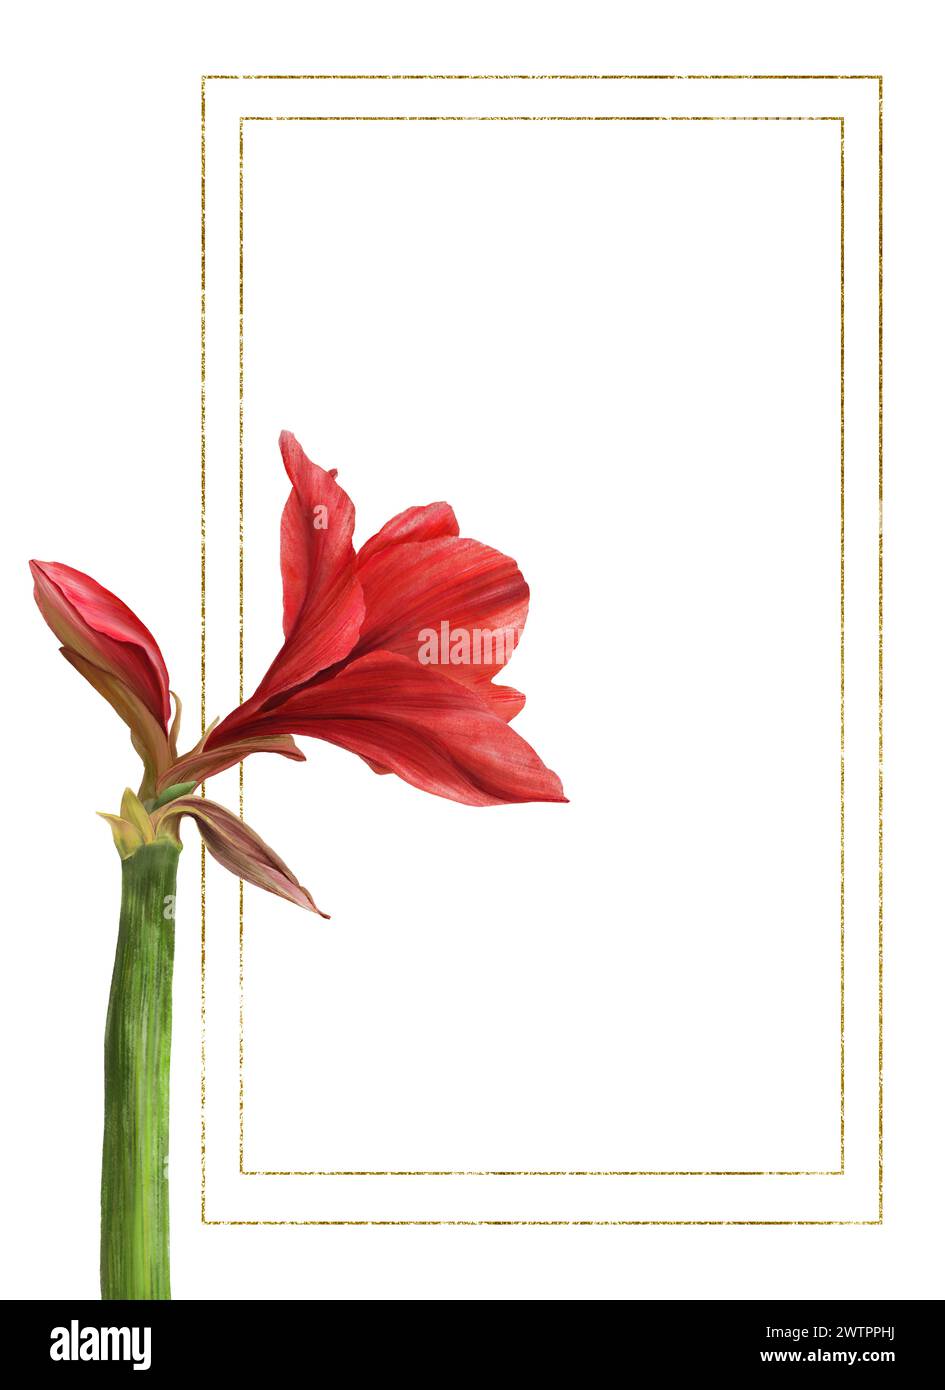 Rote amaryllis-Blüten, Stiele und Knospen mit goldenem Rahmen. Hippeastrum-Werksvorlage. Hand gezeichnet digitale Aquarellillustration Bloral Clipart für Stockfoto